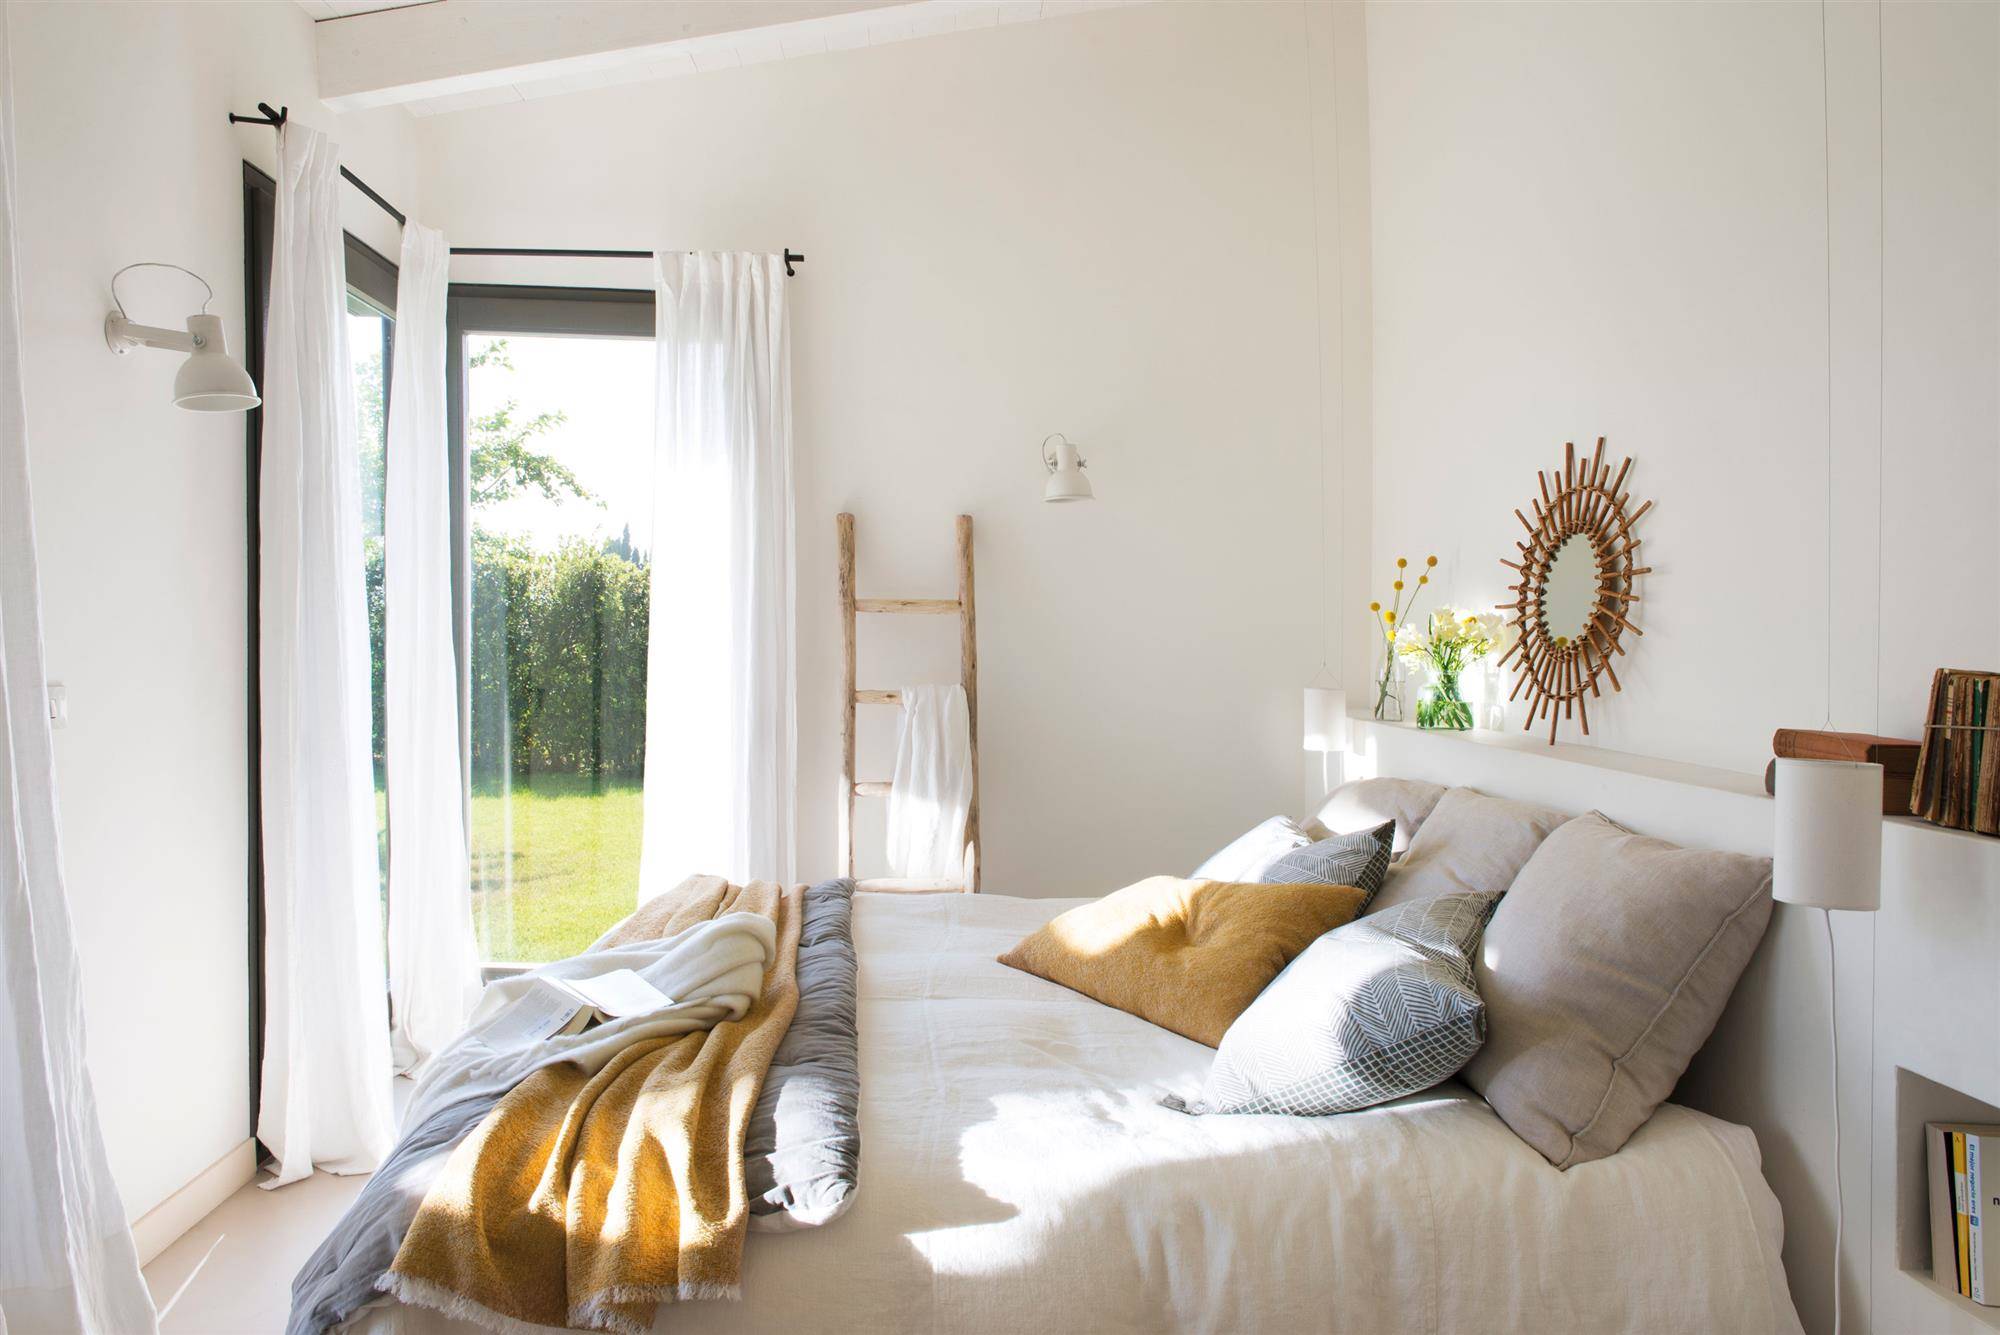 Dormitorio decorado en blanco con pinceladas de color